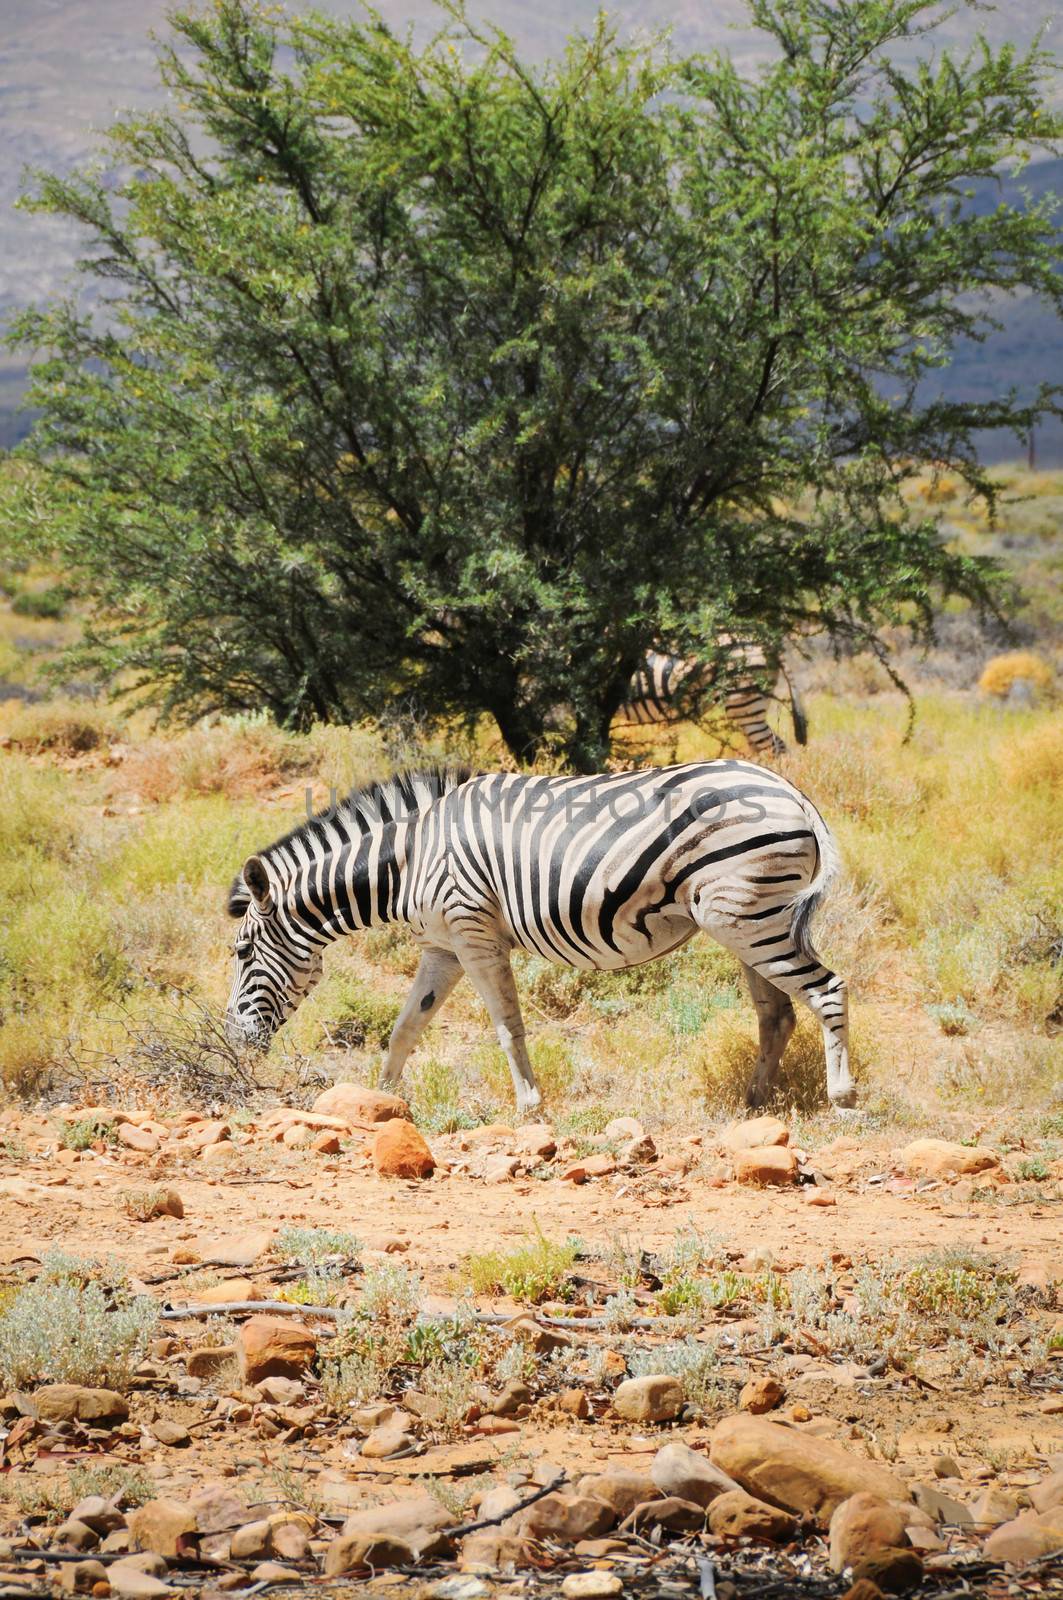 One wild zebra in Afrian bush  by iryna_rasko